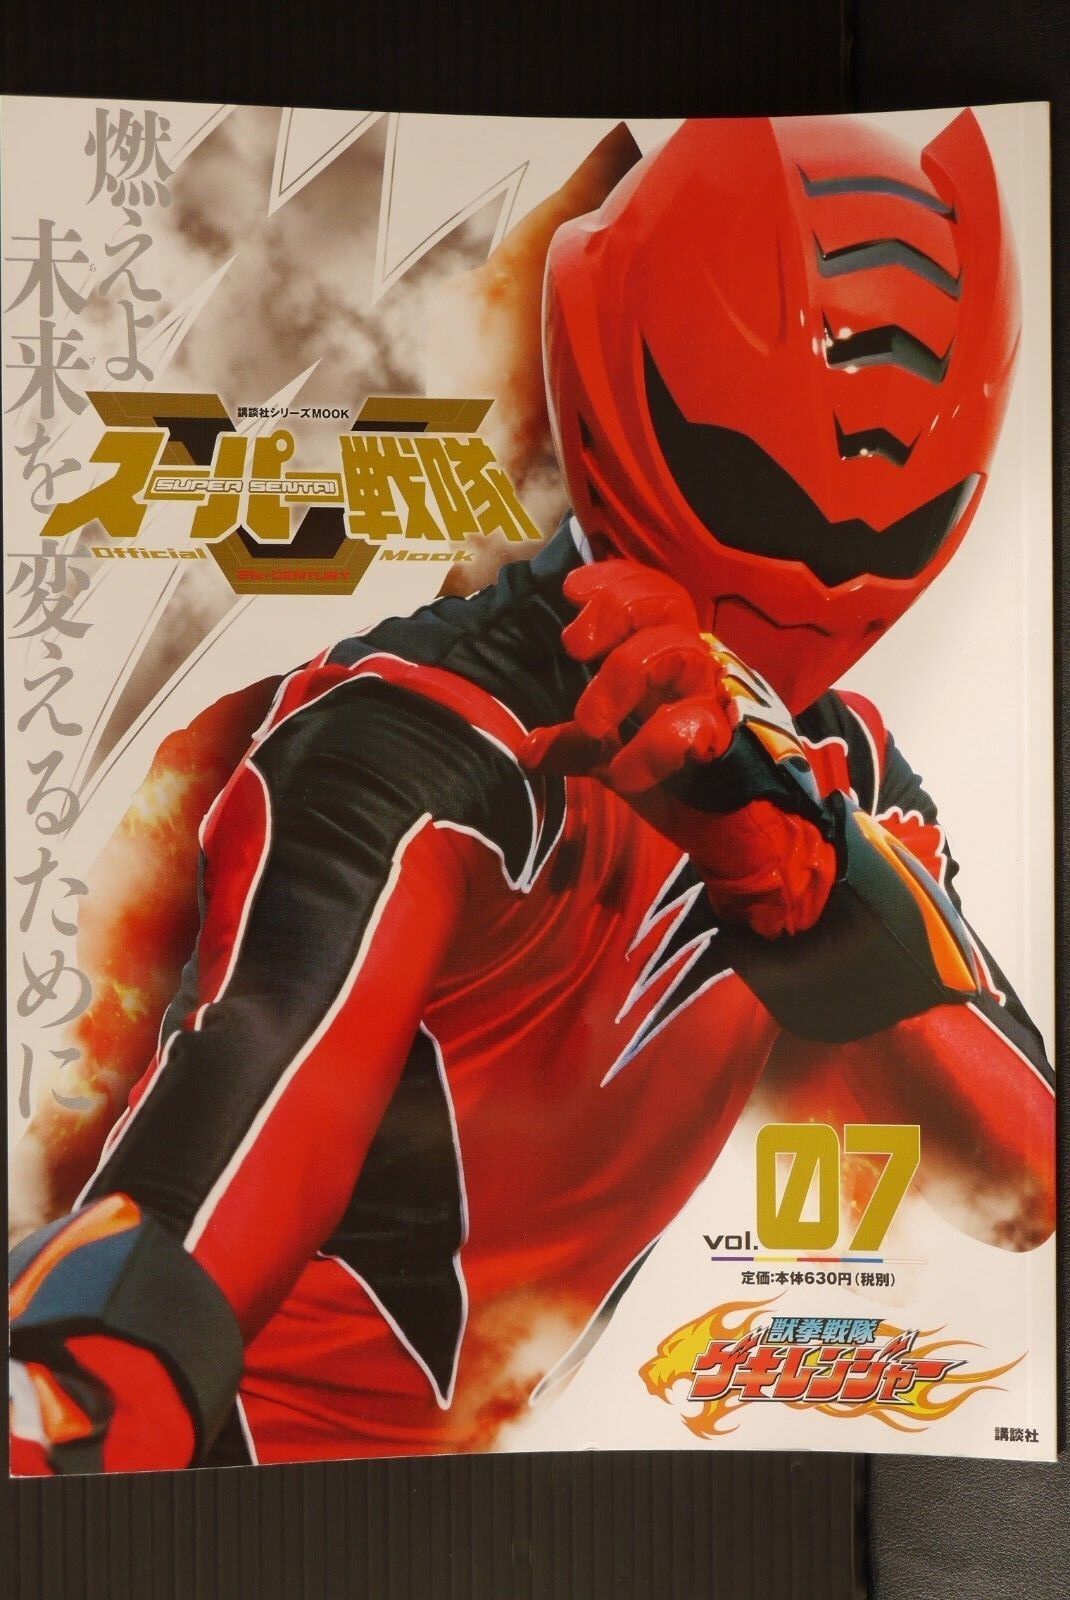 Super Sentai Official Mook 21st Century vol.7 'Juken Sentai Gekiranger' - JAPAN